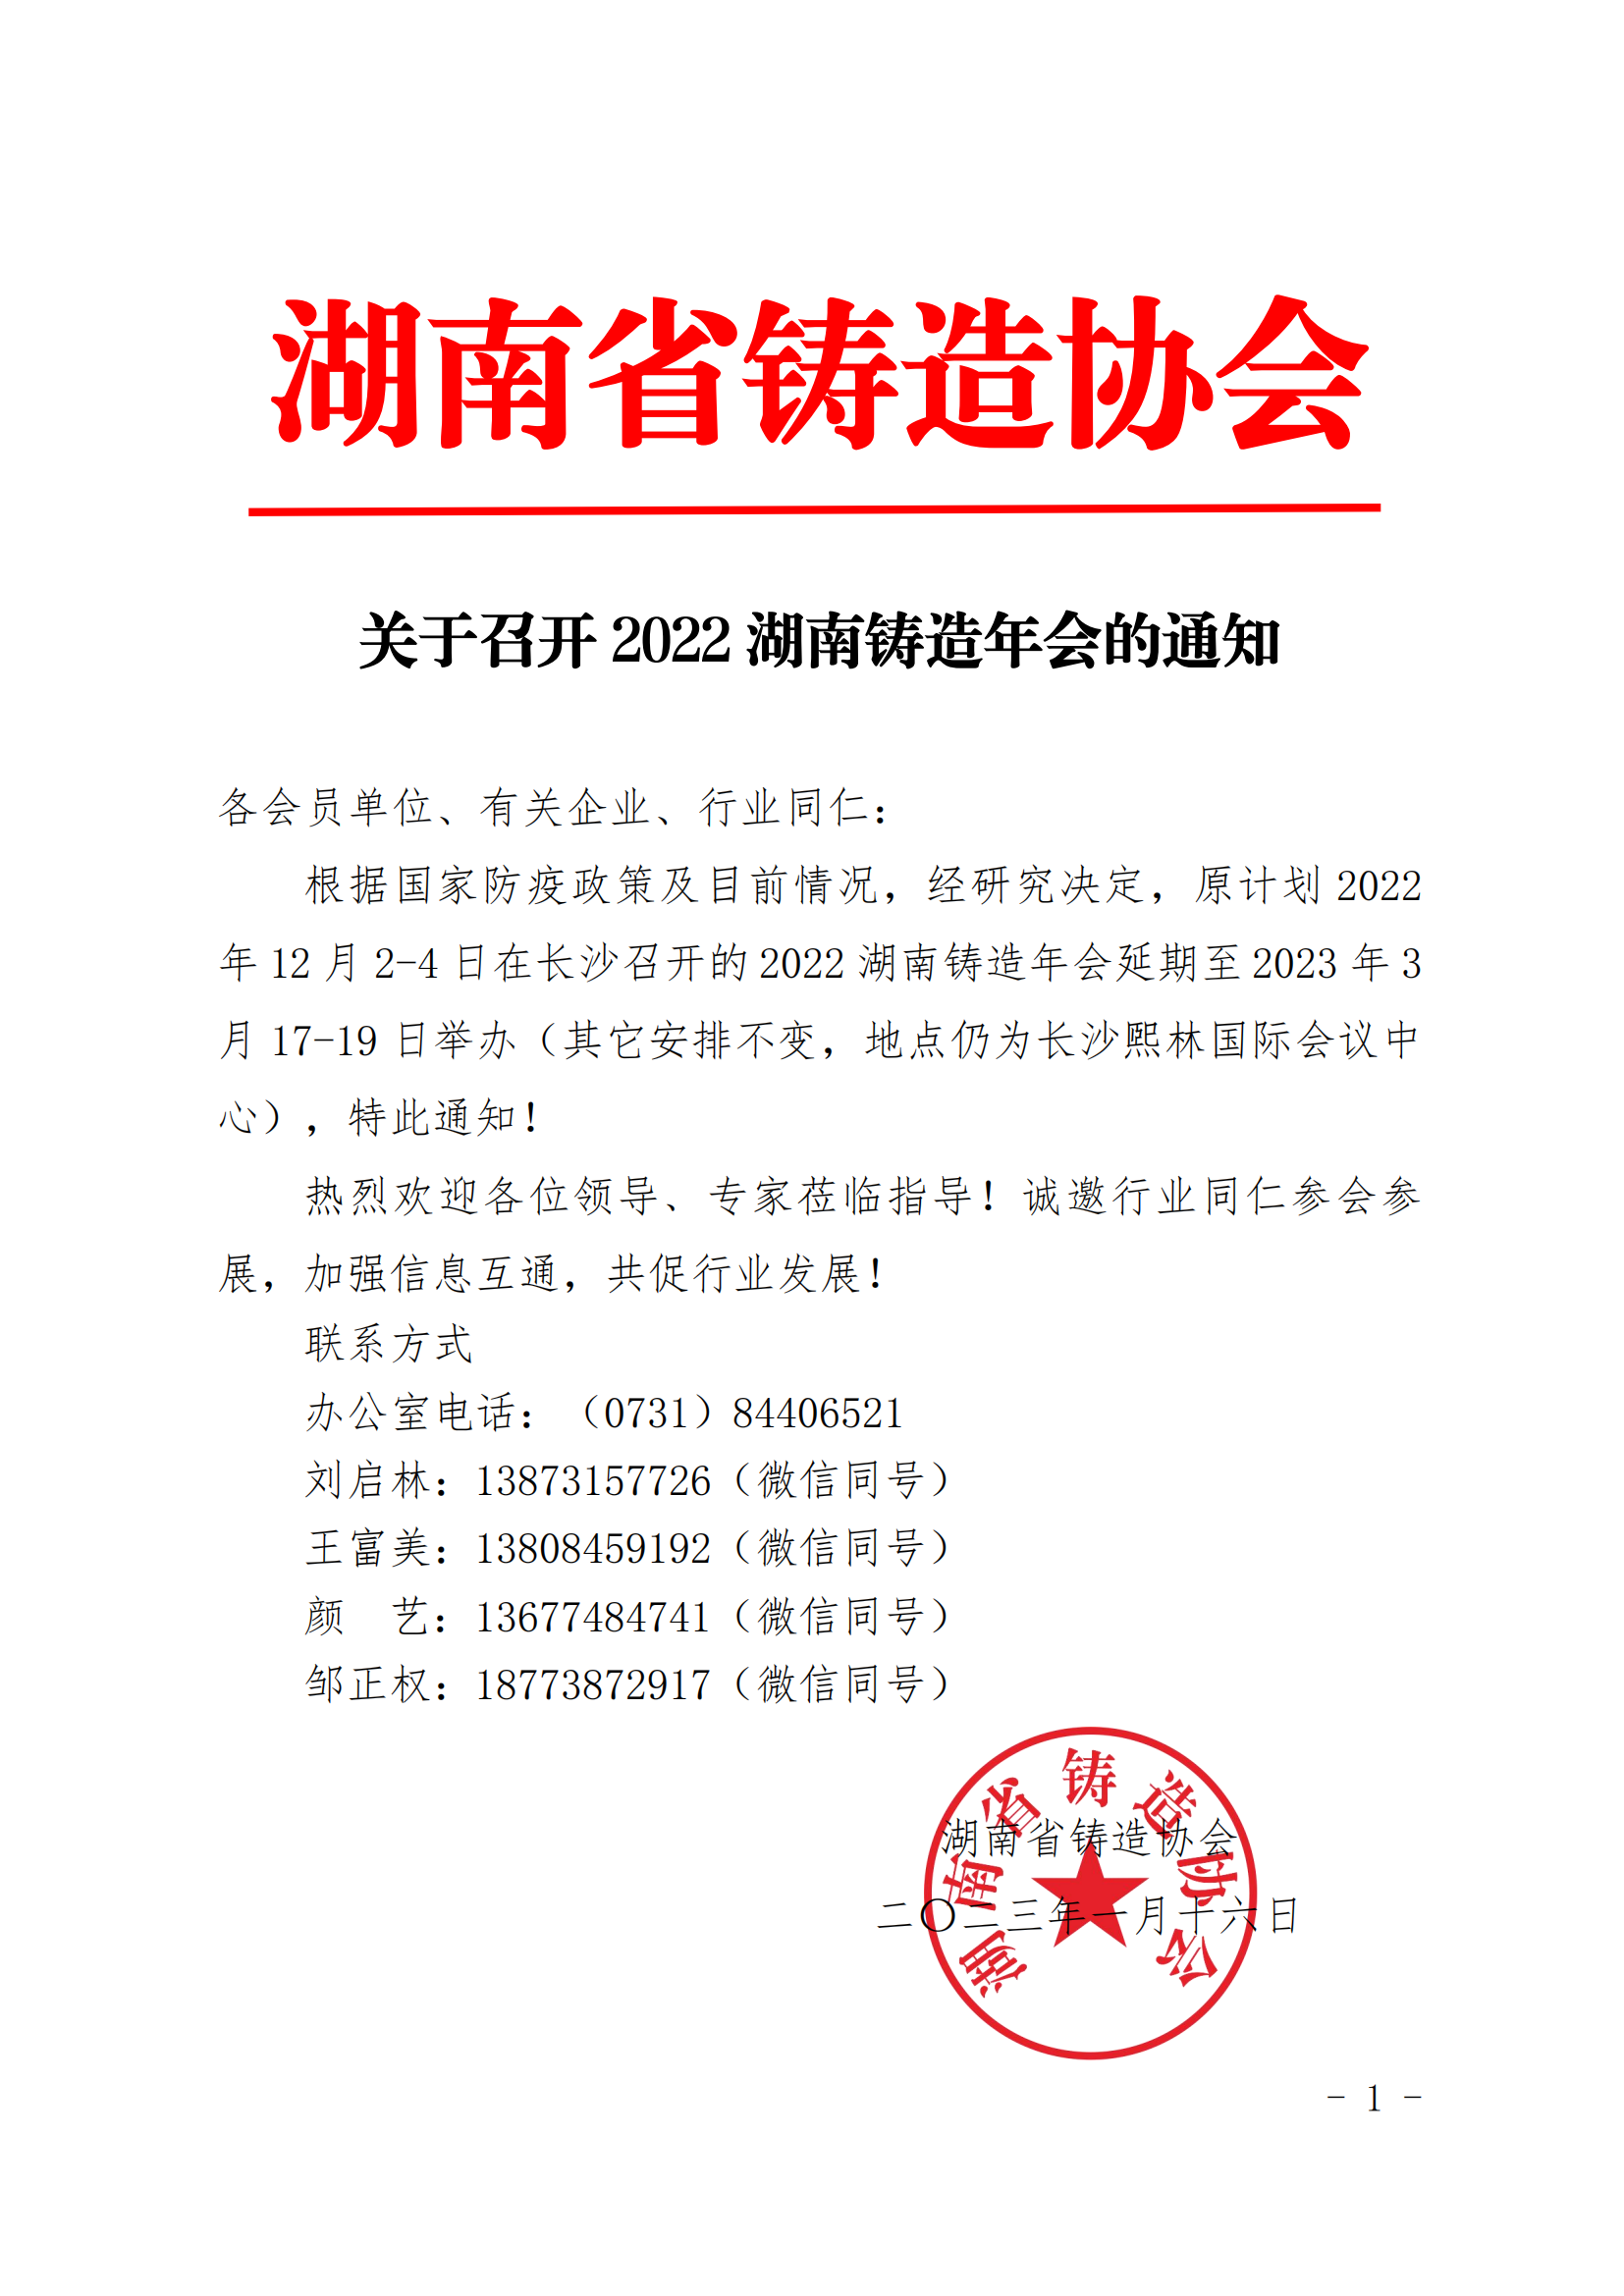 关于2022湖南铸造年会召开的通知(1)_00.png